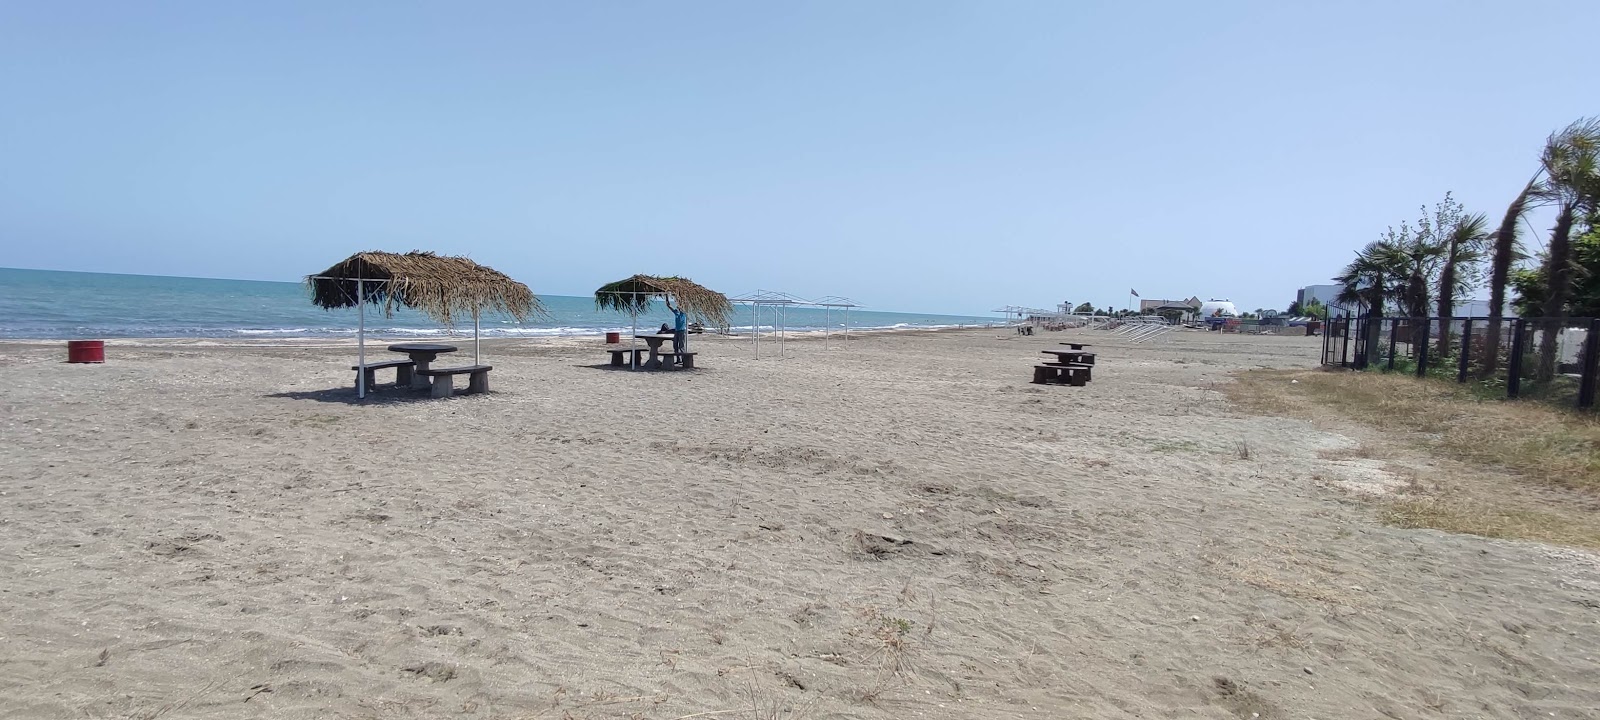 Φωτογραφία του Astara Beach με επίπεδο καθαριότητας εν μέρει καθαρό